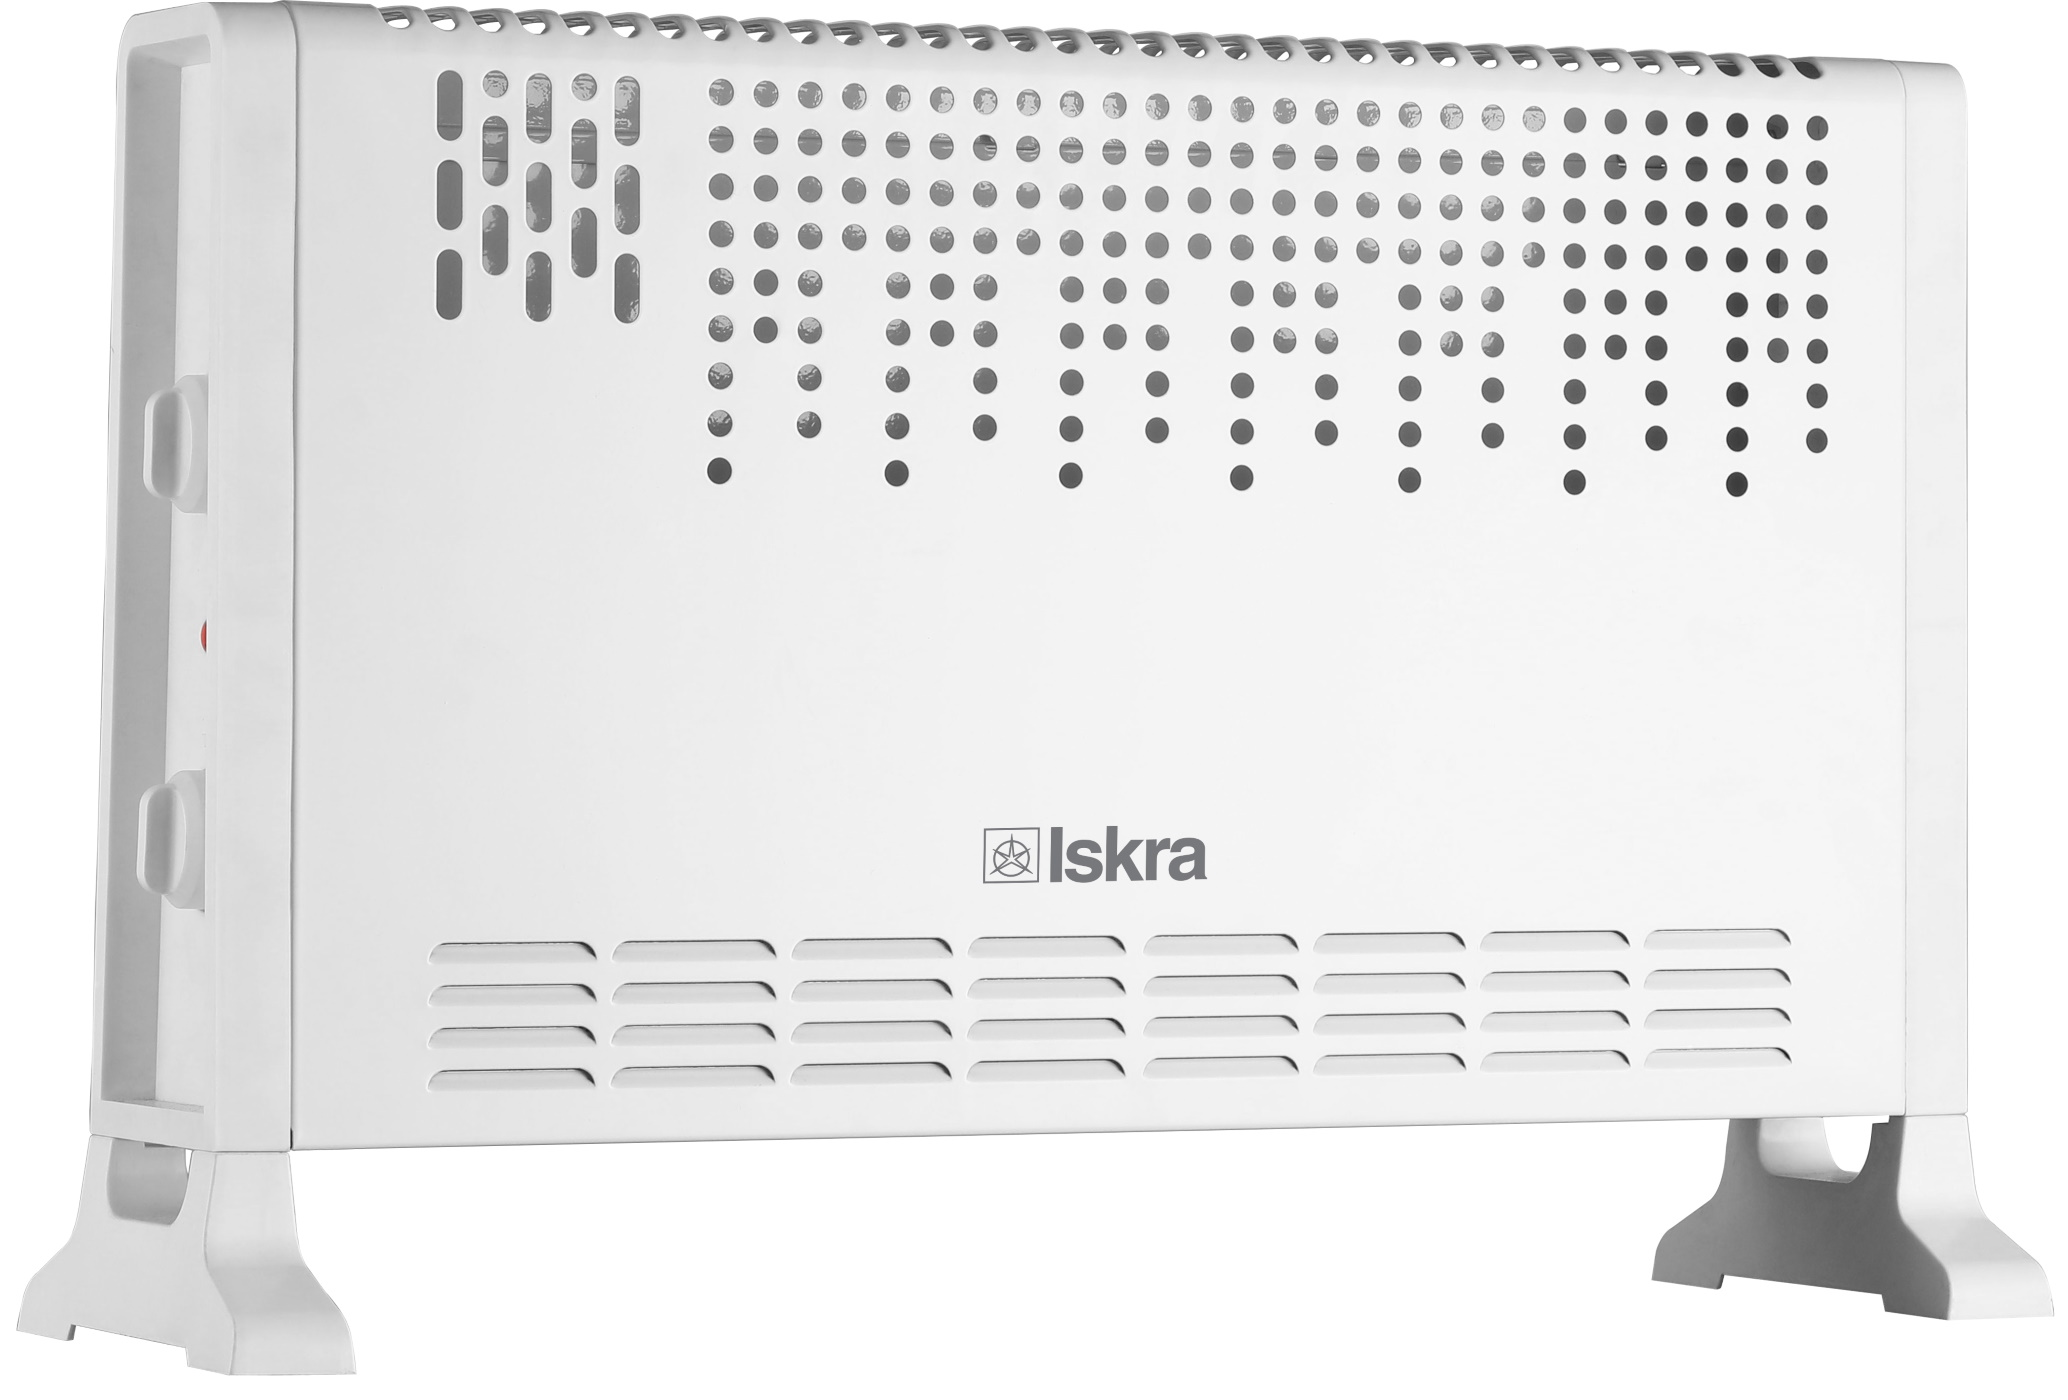 ISKRA Elektrisches Standheizgerät Konvektor m²) (2000 25 Raumgröße: Watt